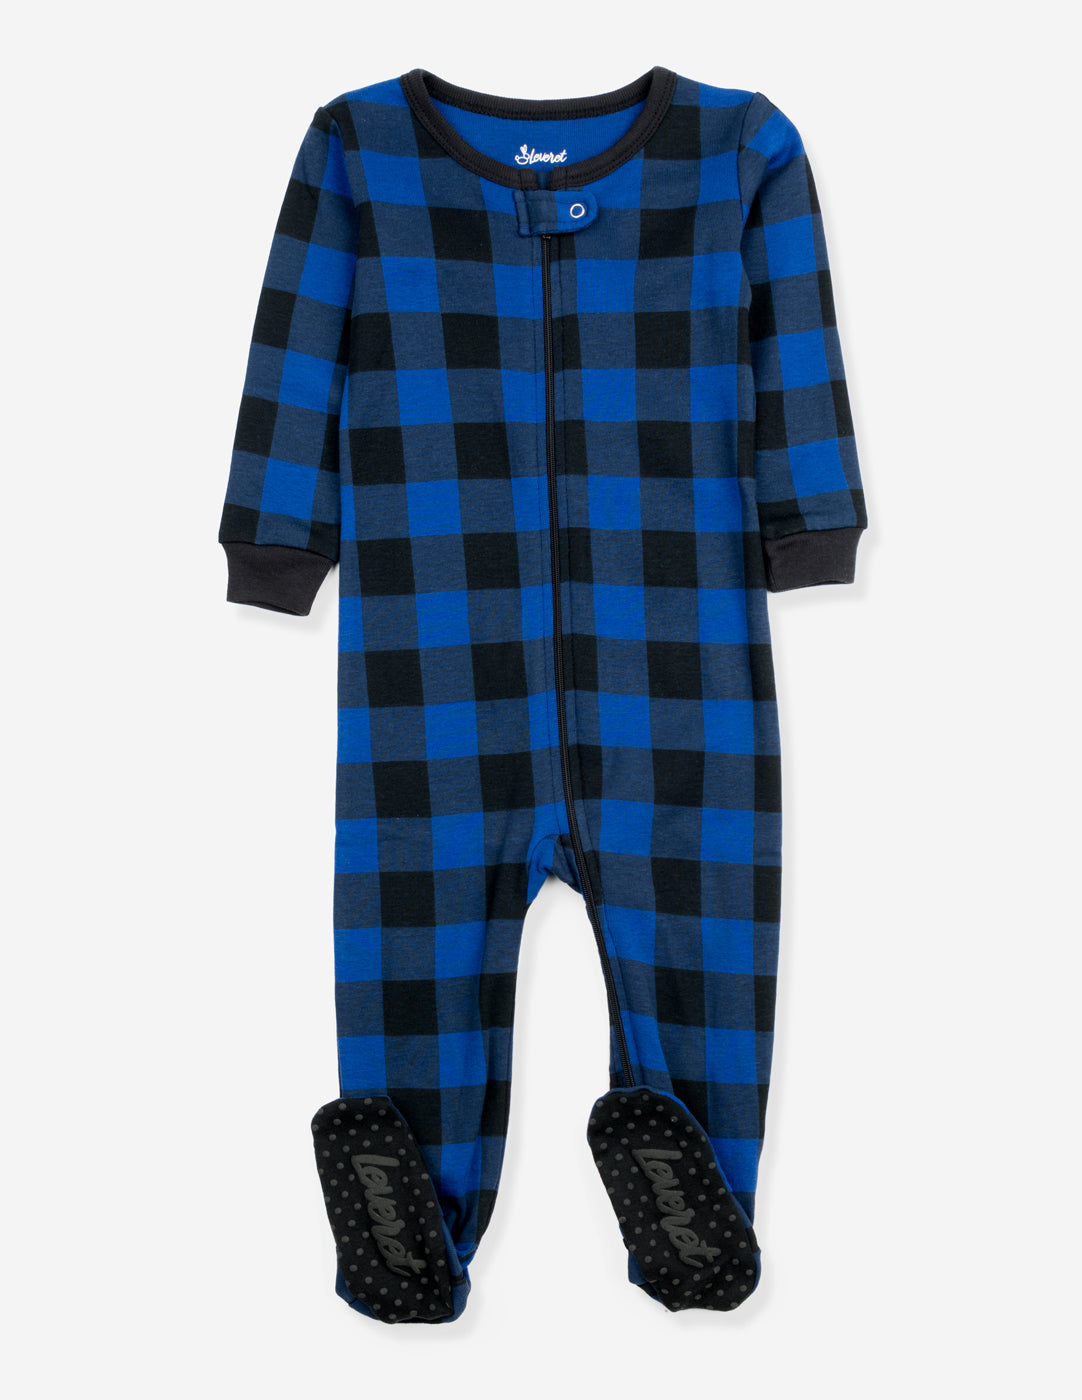 Baby Footed Plaid Pajamas